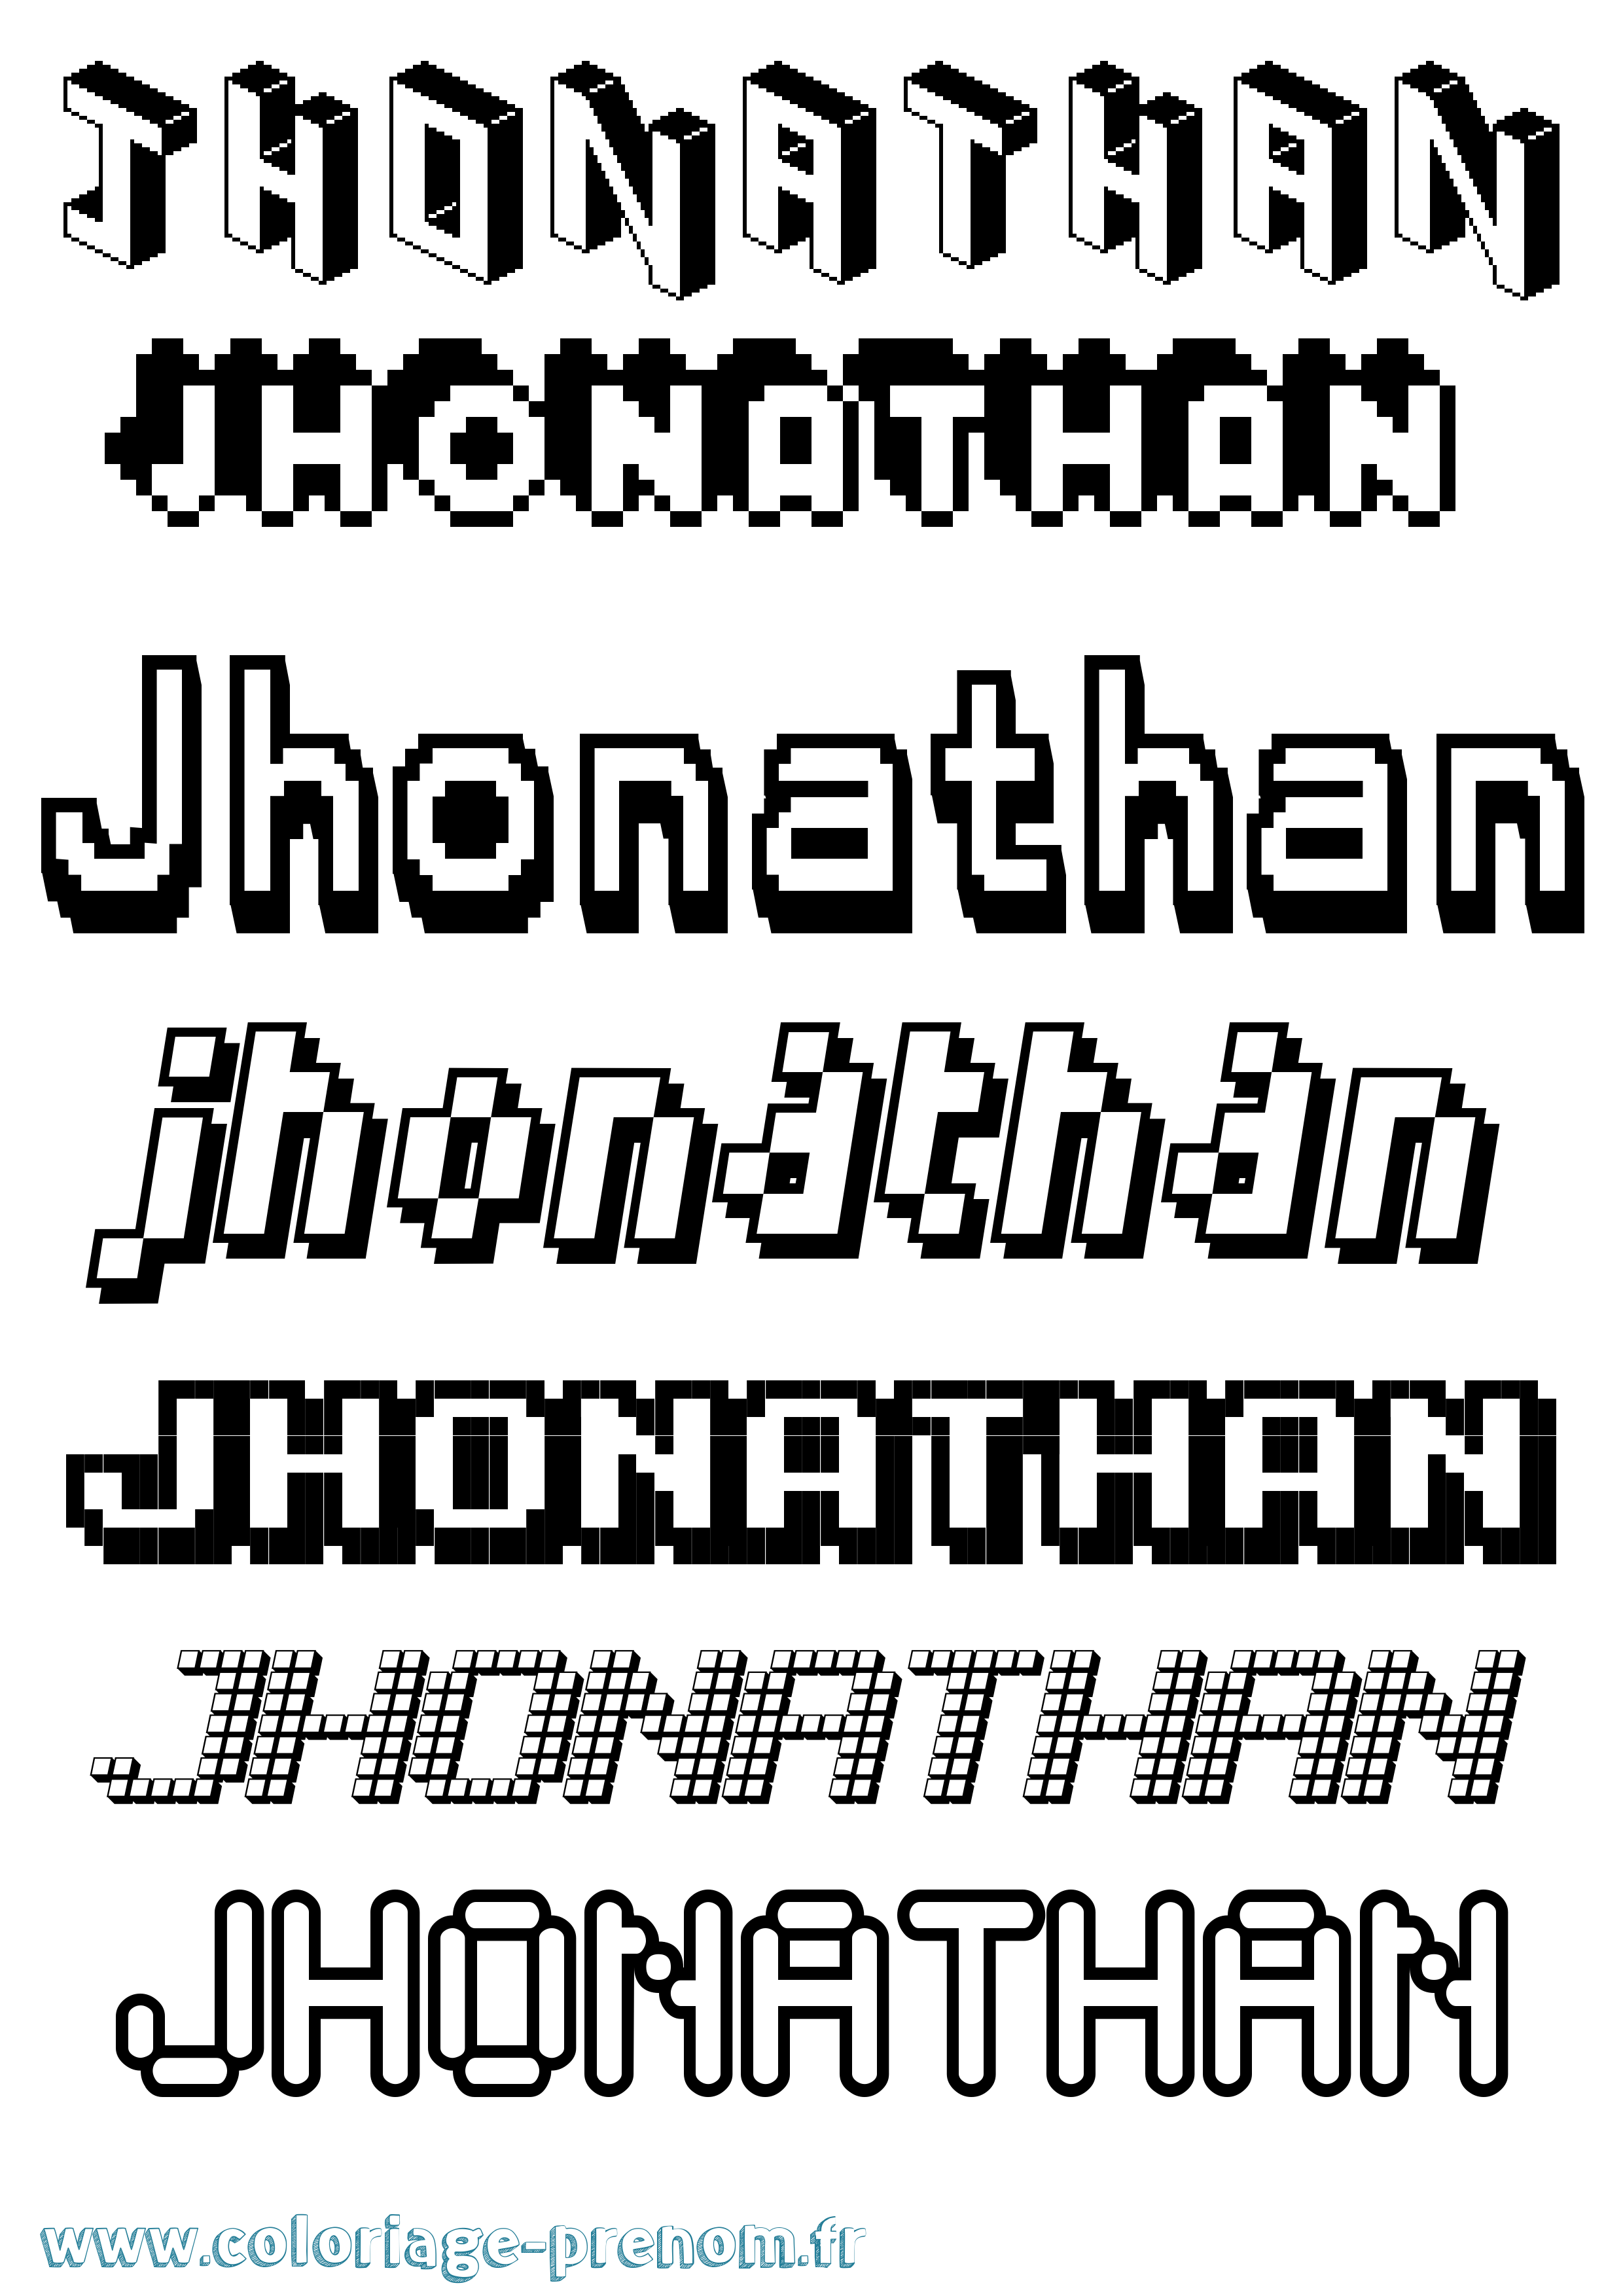 Coloriage prénom Jhonathan Pixel